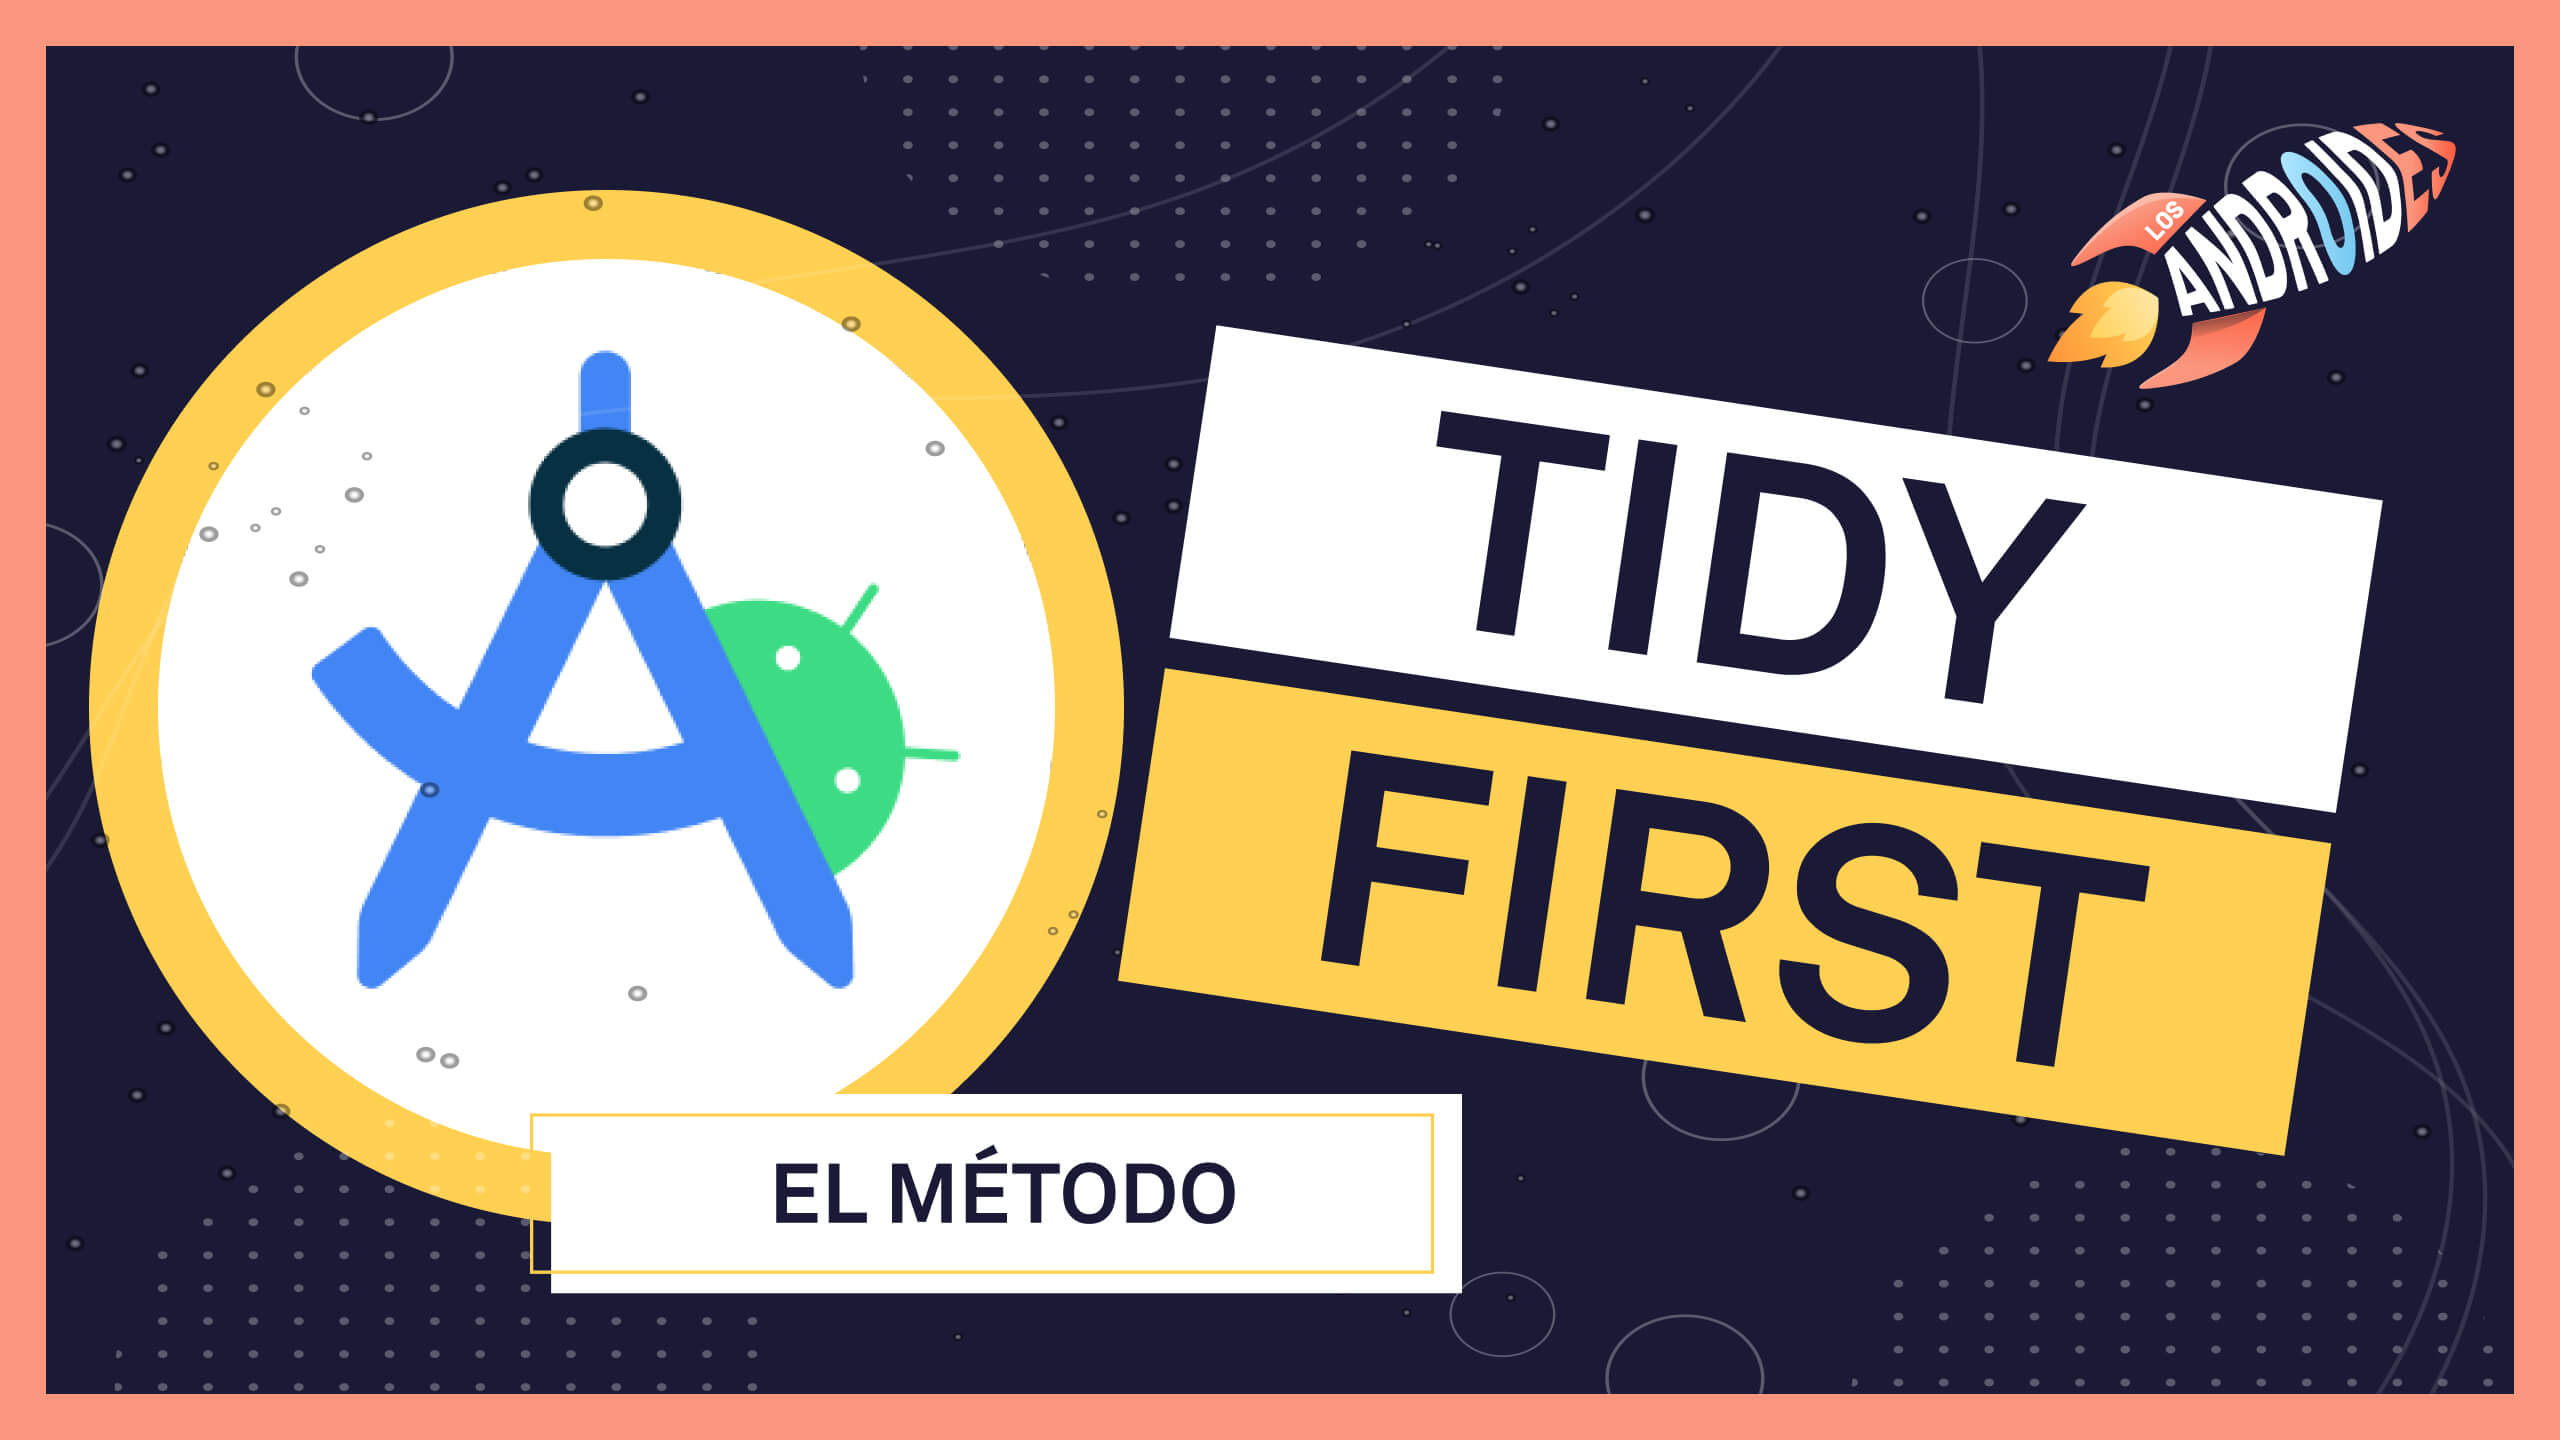 El método TIDY FIRST